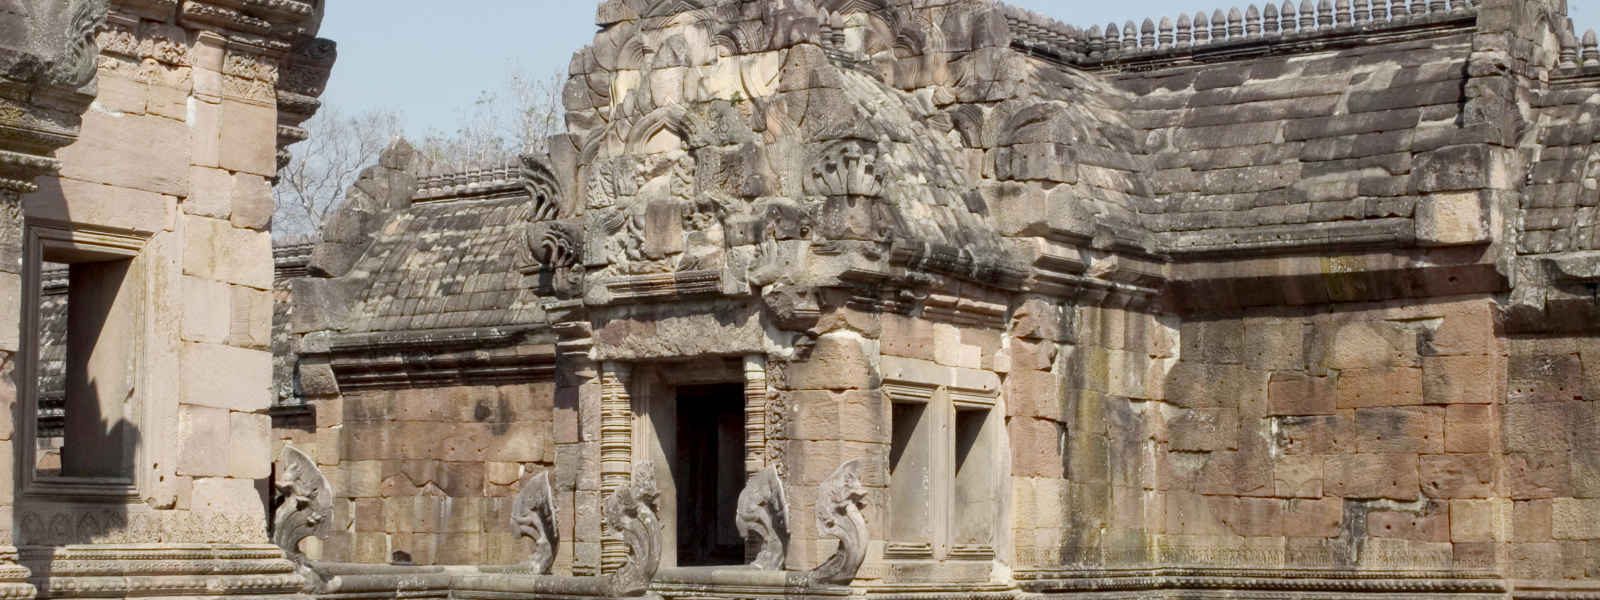 Le site khmer de Prasat Phanom Rung dans l'Isan, Thaïlande